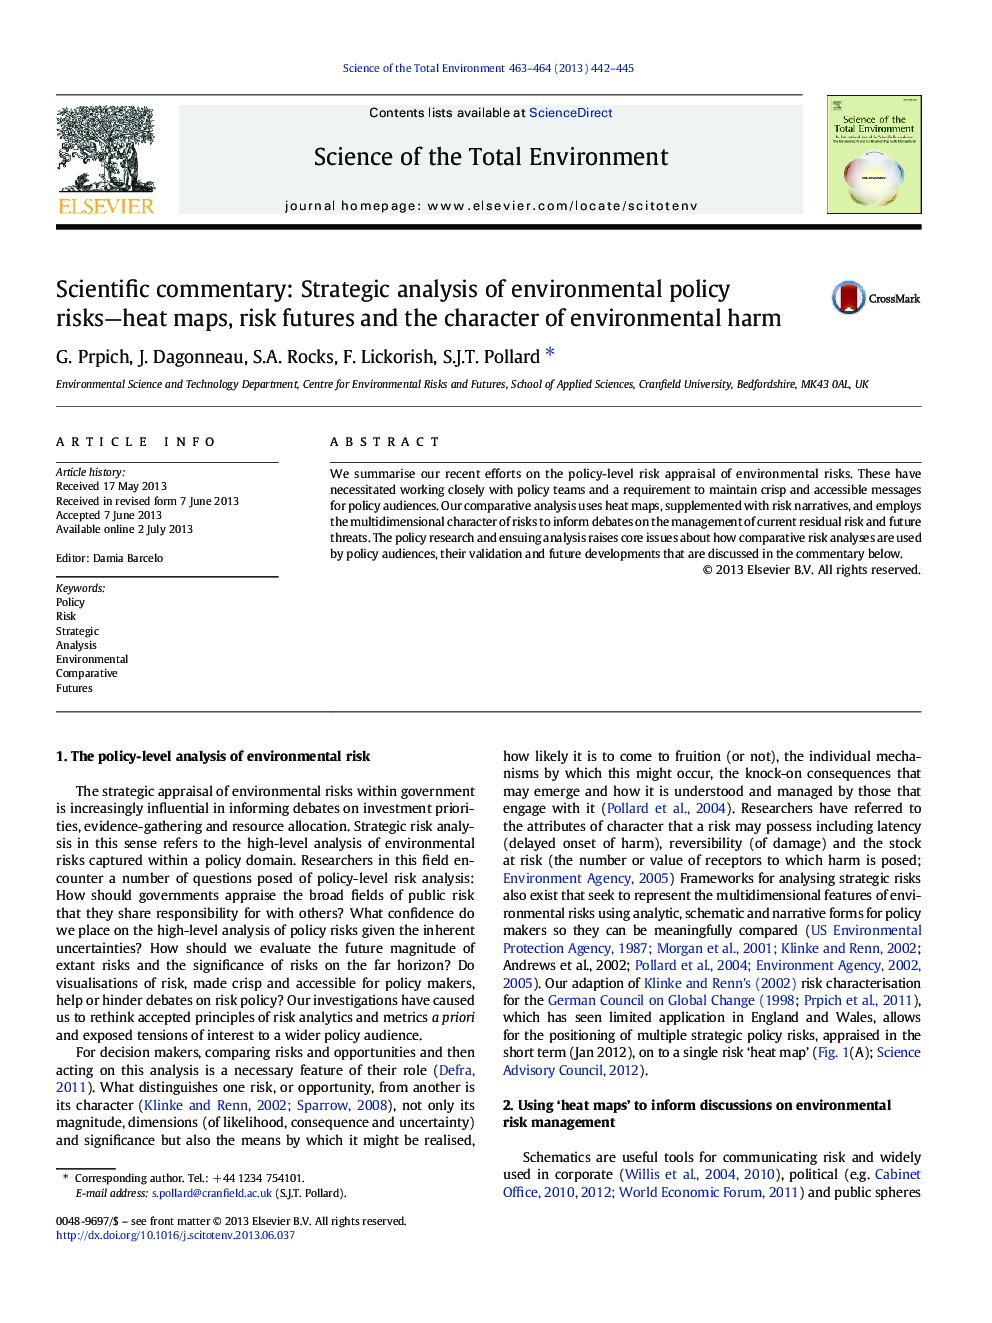 تفسیر علمی: تجزیه و تحلیل استراتژیک خطرات زیست محیطی - نقشه های گرما، آینده ی خطر و شخصیت آسیب زیست محیطی 